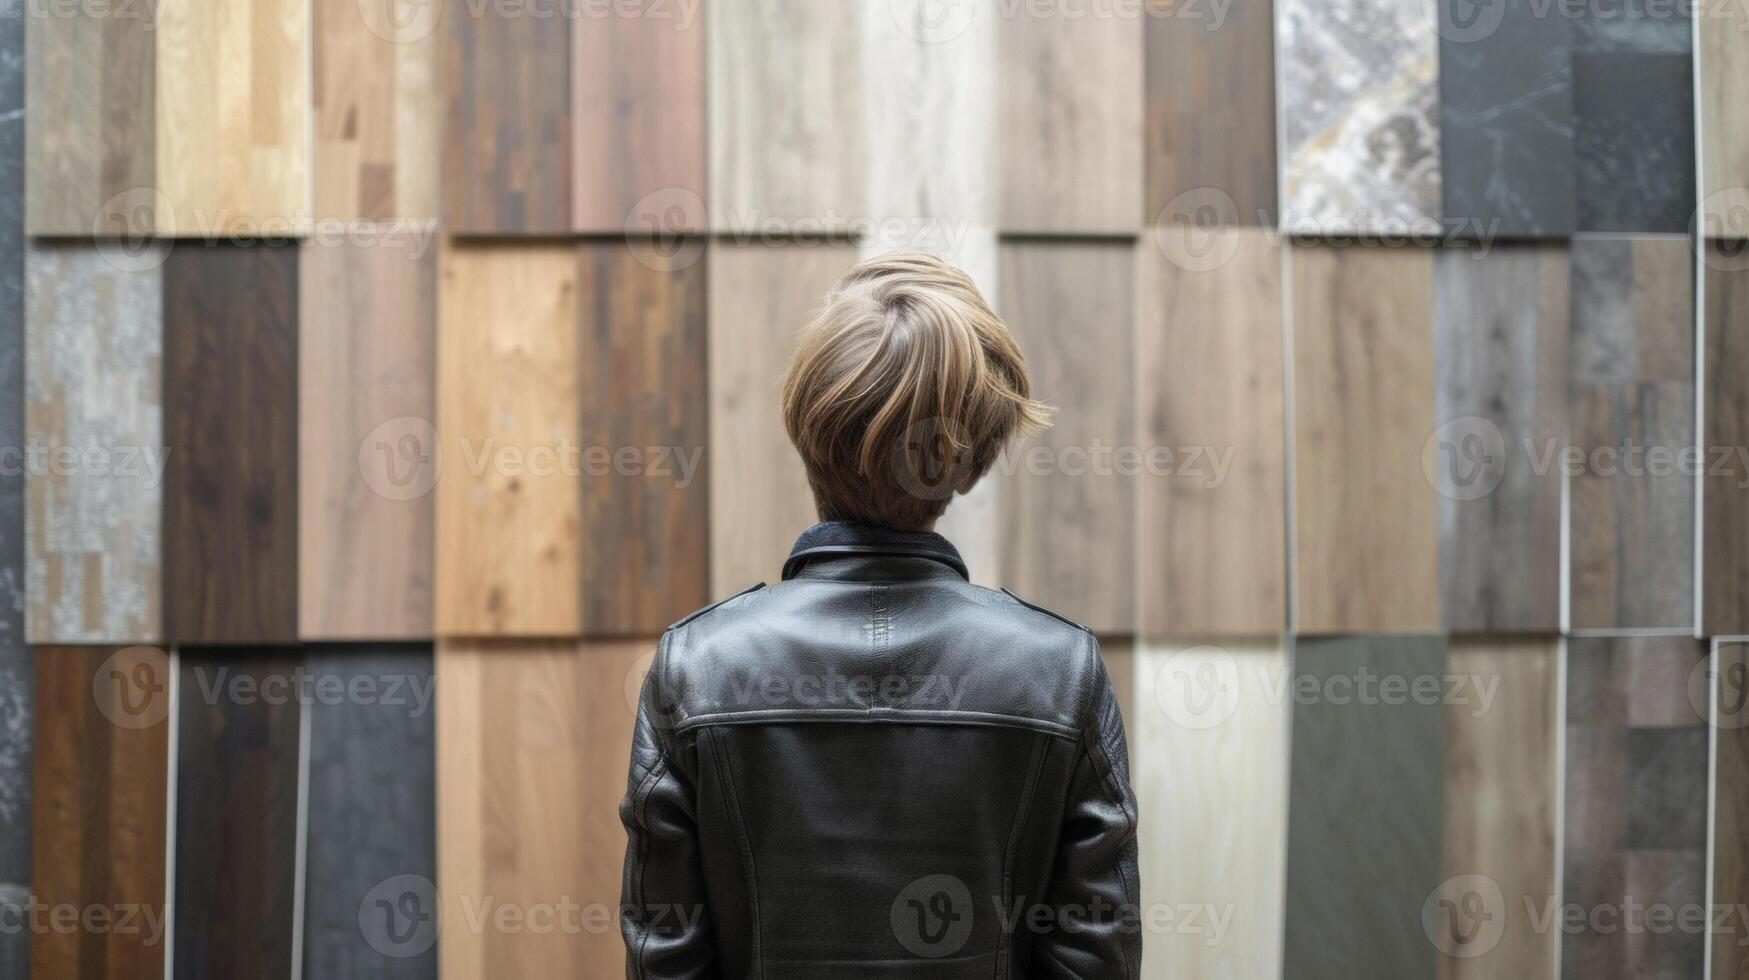 un persona en pie en frente de un pared de diferente piso materiales molesto a decidir Entre madera dura laminado o losas para su nuevo hogar renovación proyecto foto